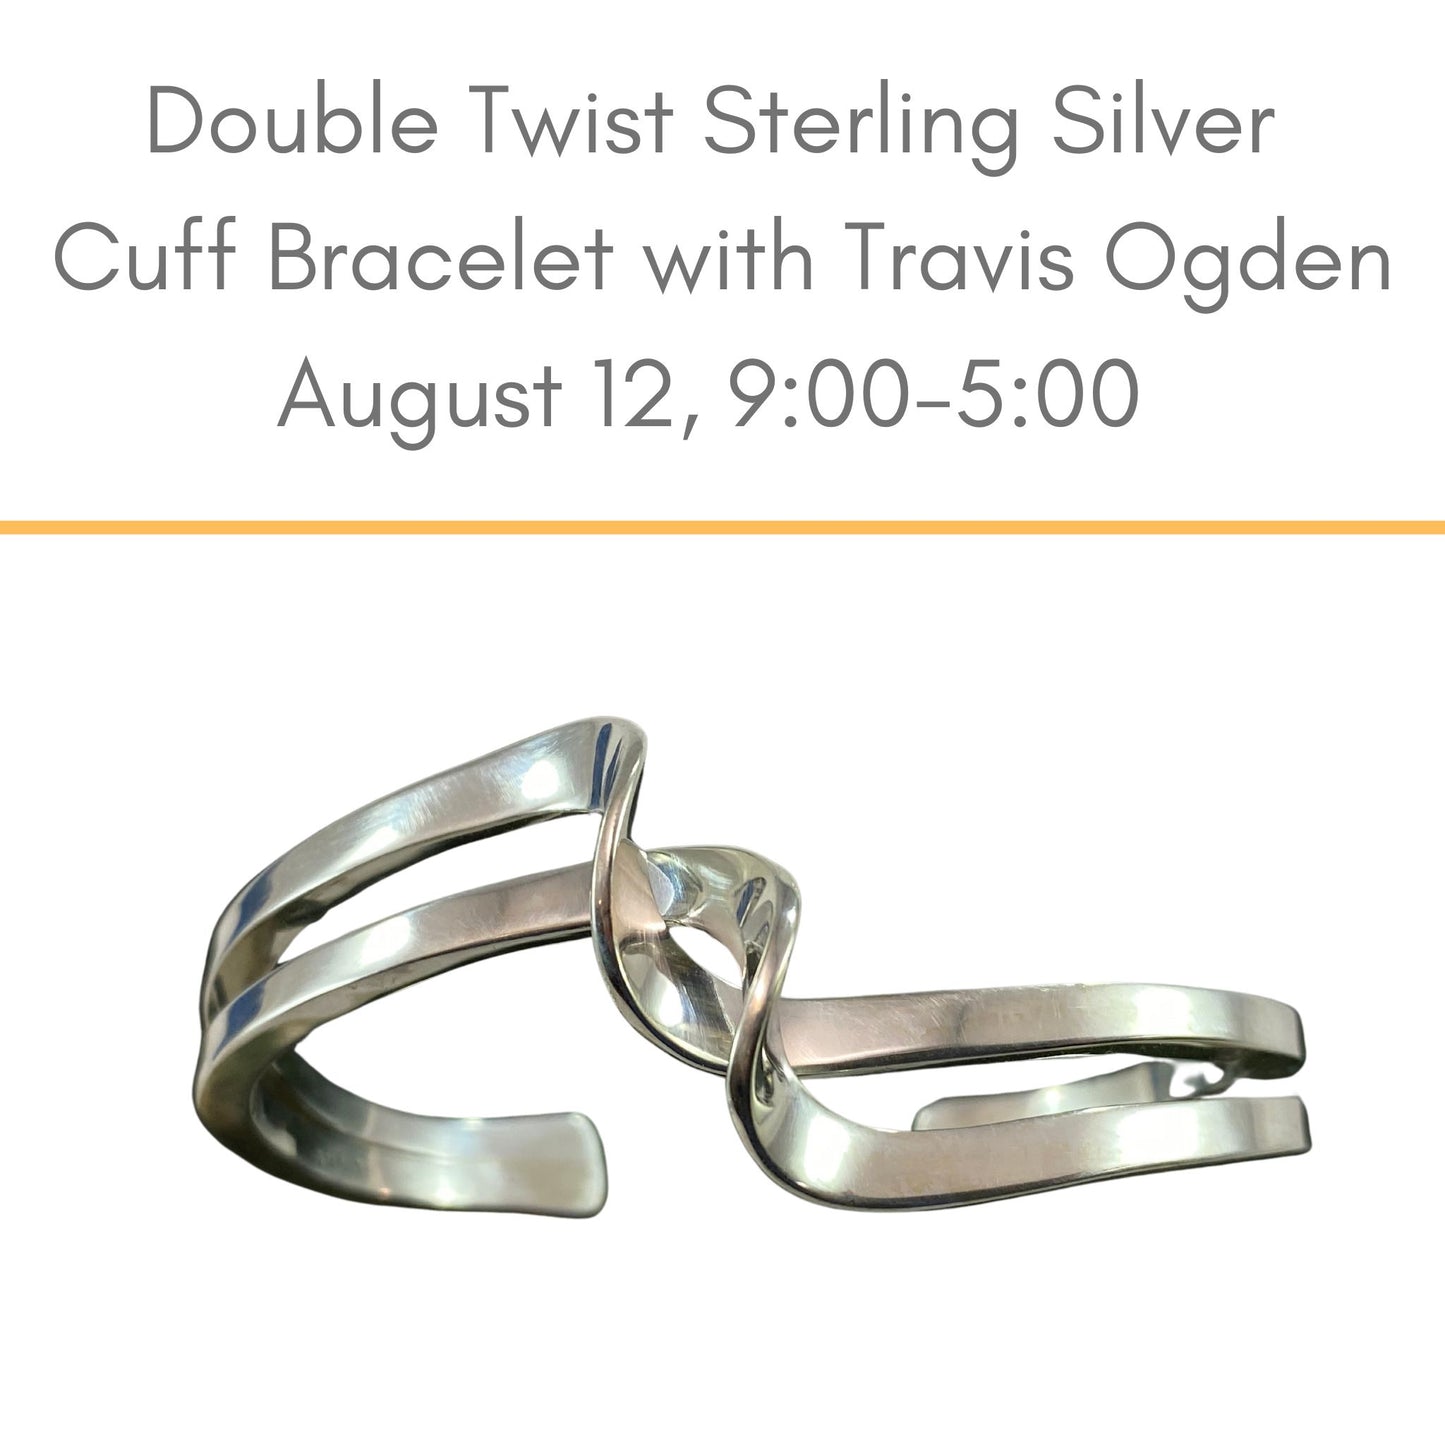 Double twist cuff metalsmithing workshop with Travis Ogden on Monday, August 12